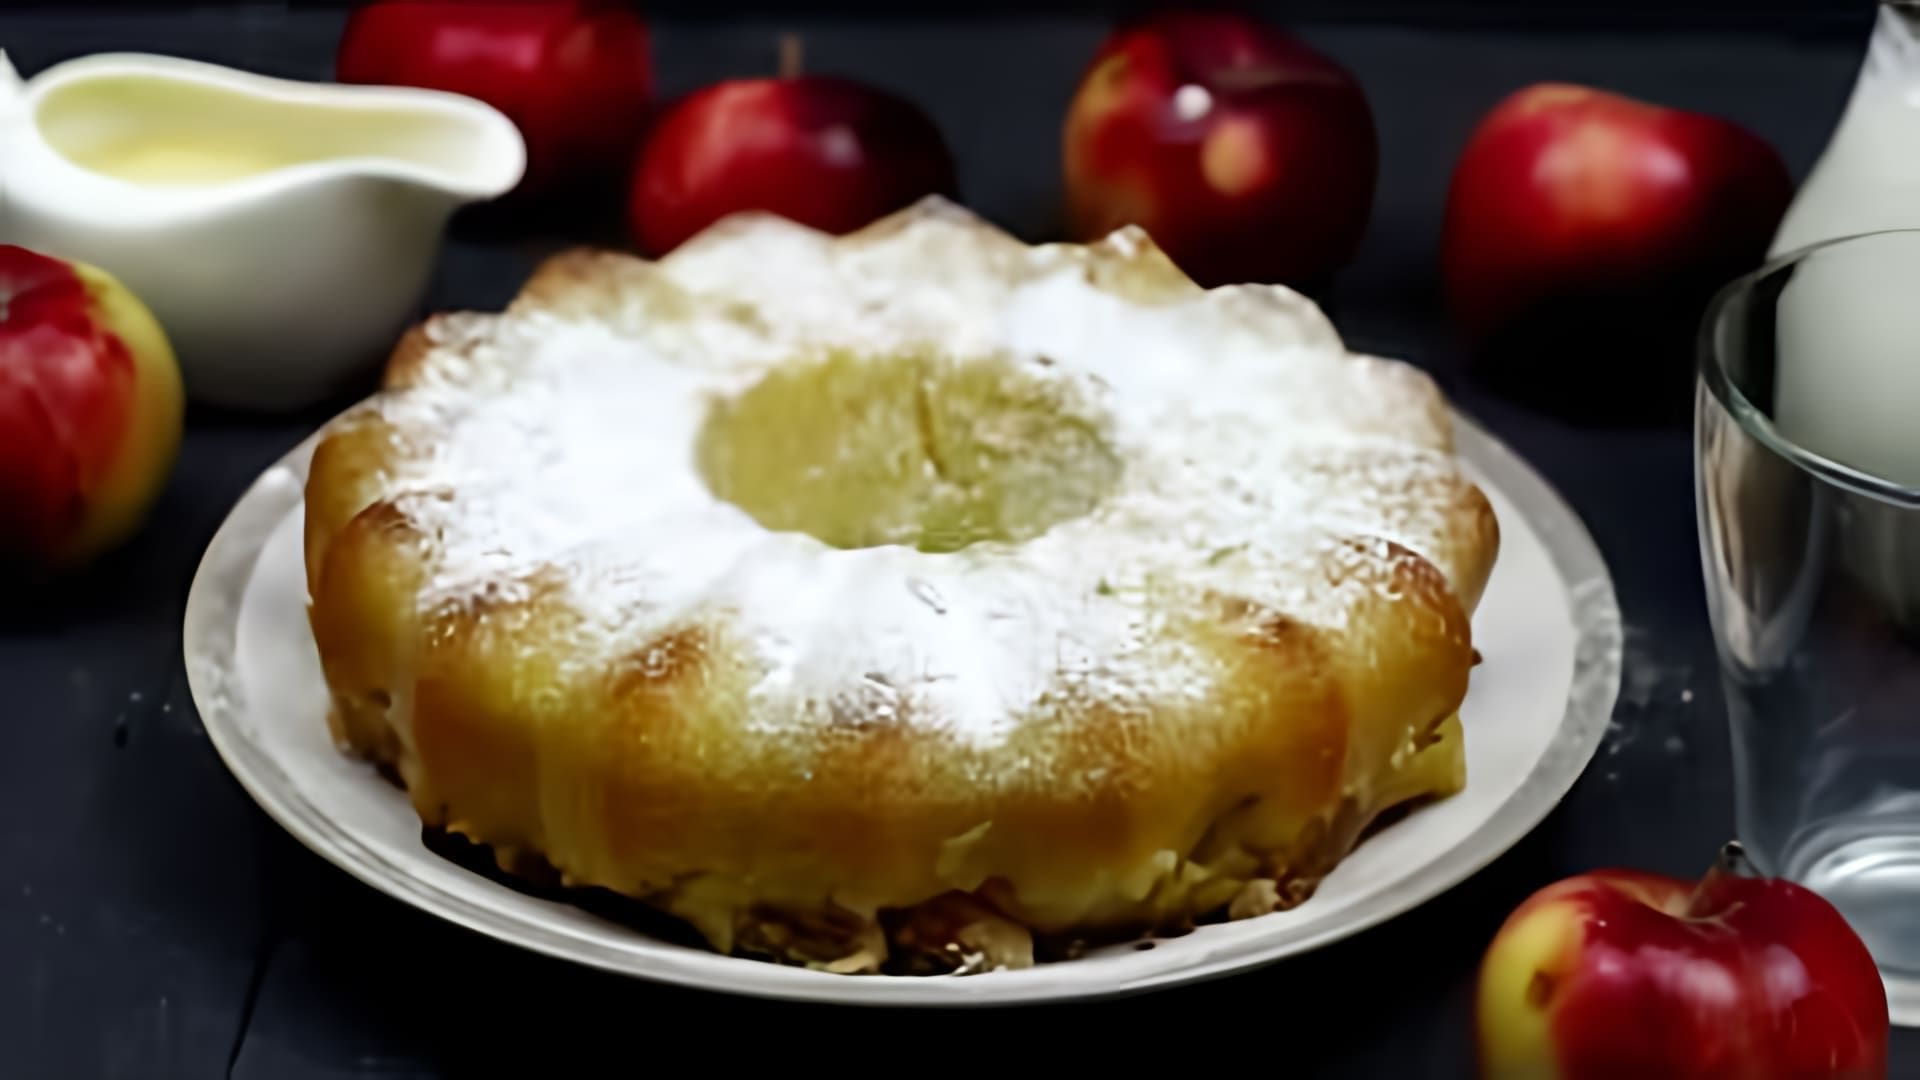 Яблочный манник на кефире - это вкусный и простой в приготовлении десерт, который можно приготовить в домашних условиях